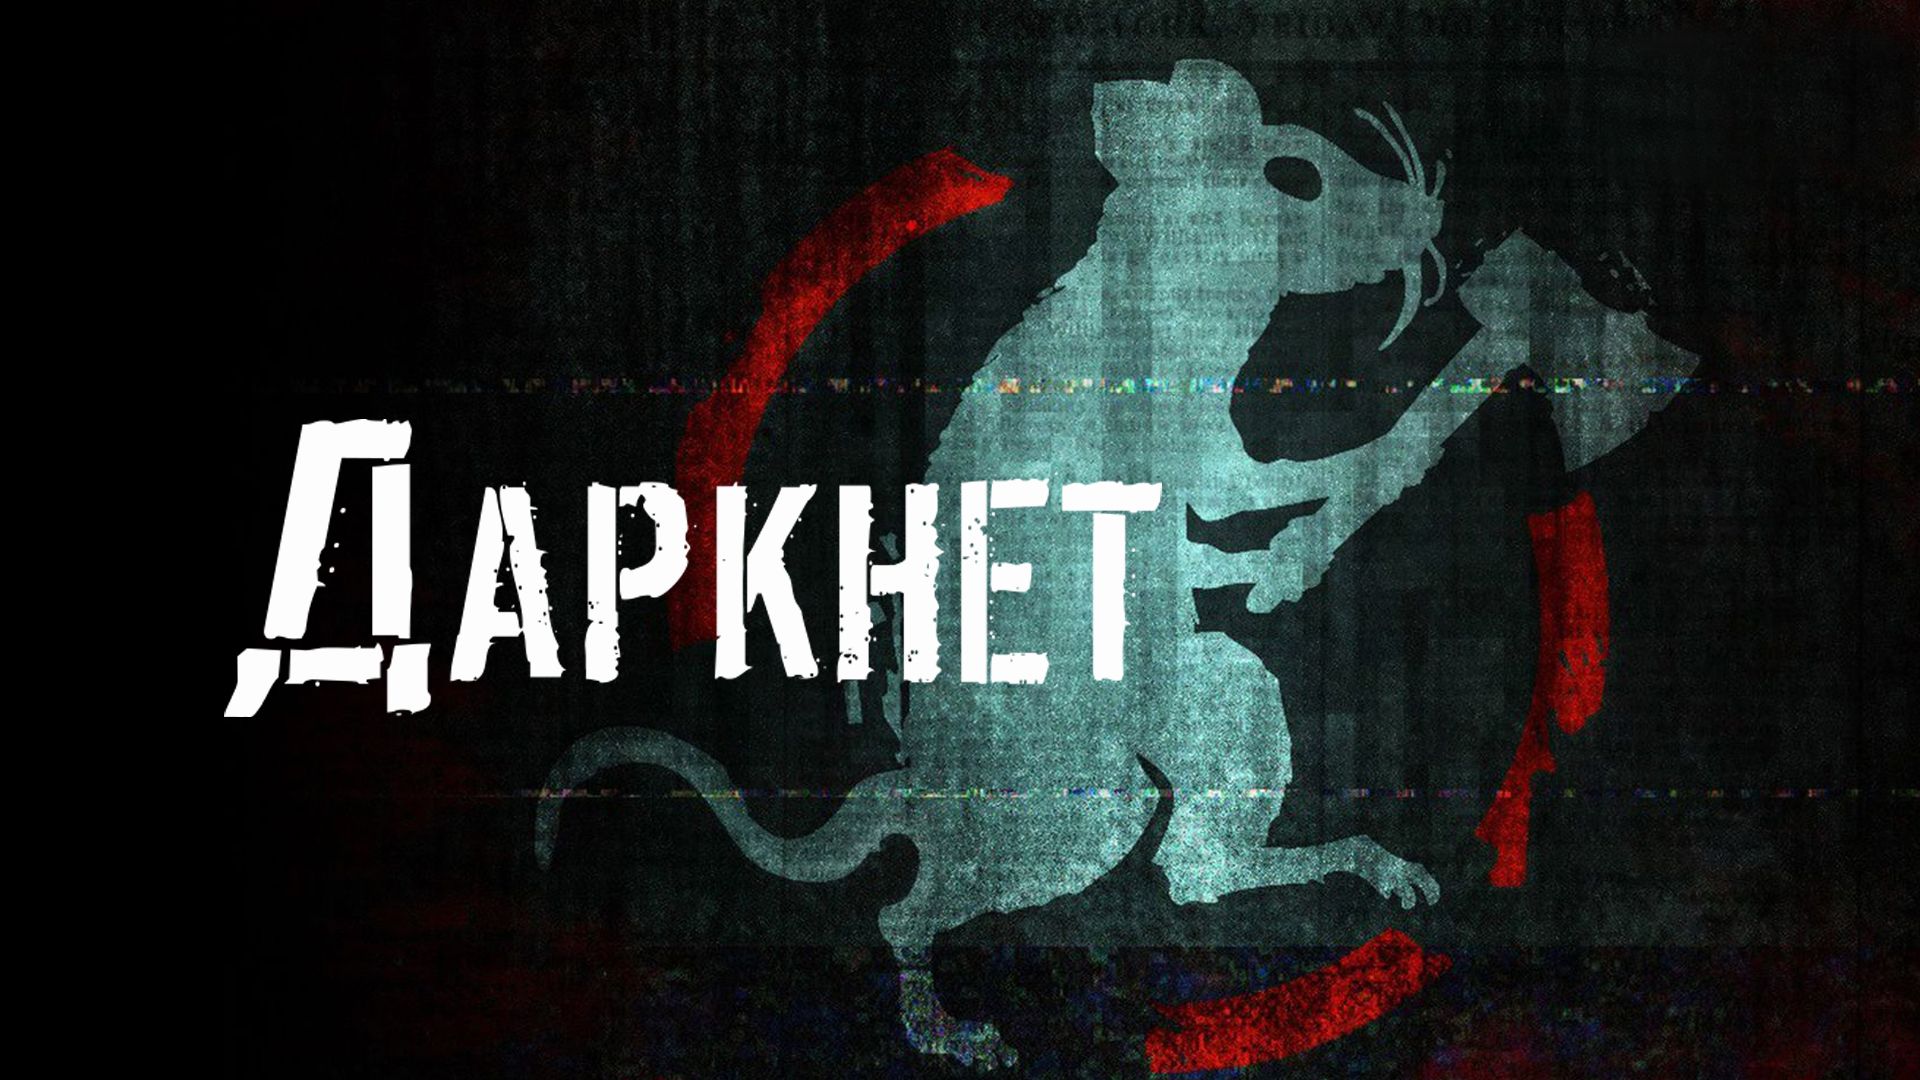 Darknet 2013 online tor browser blocking sites mega